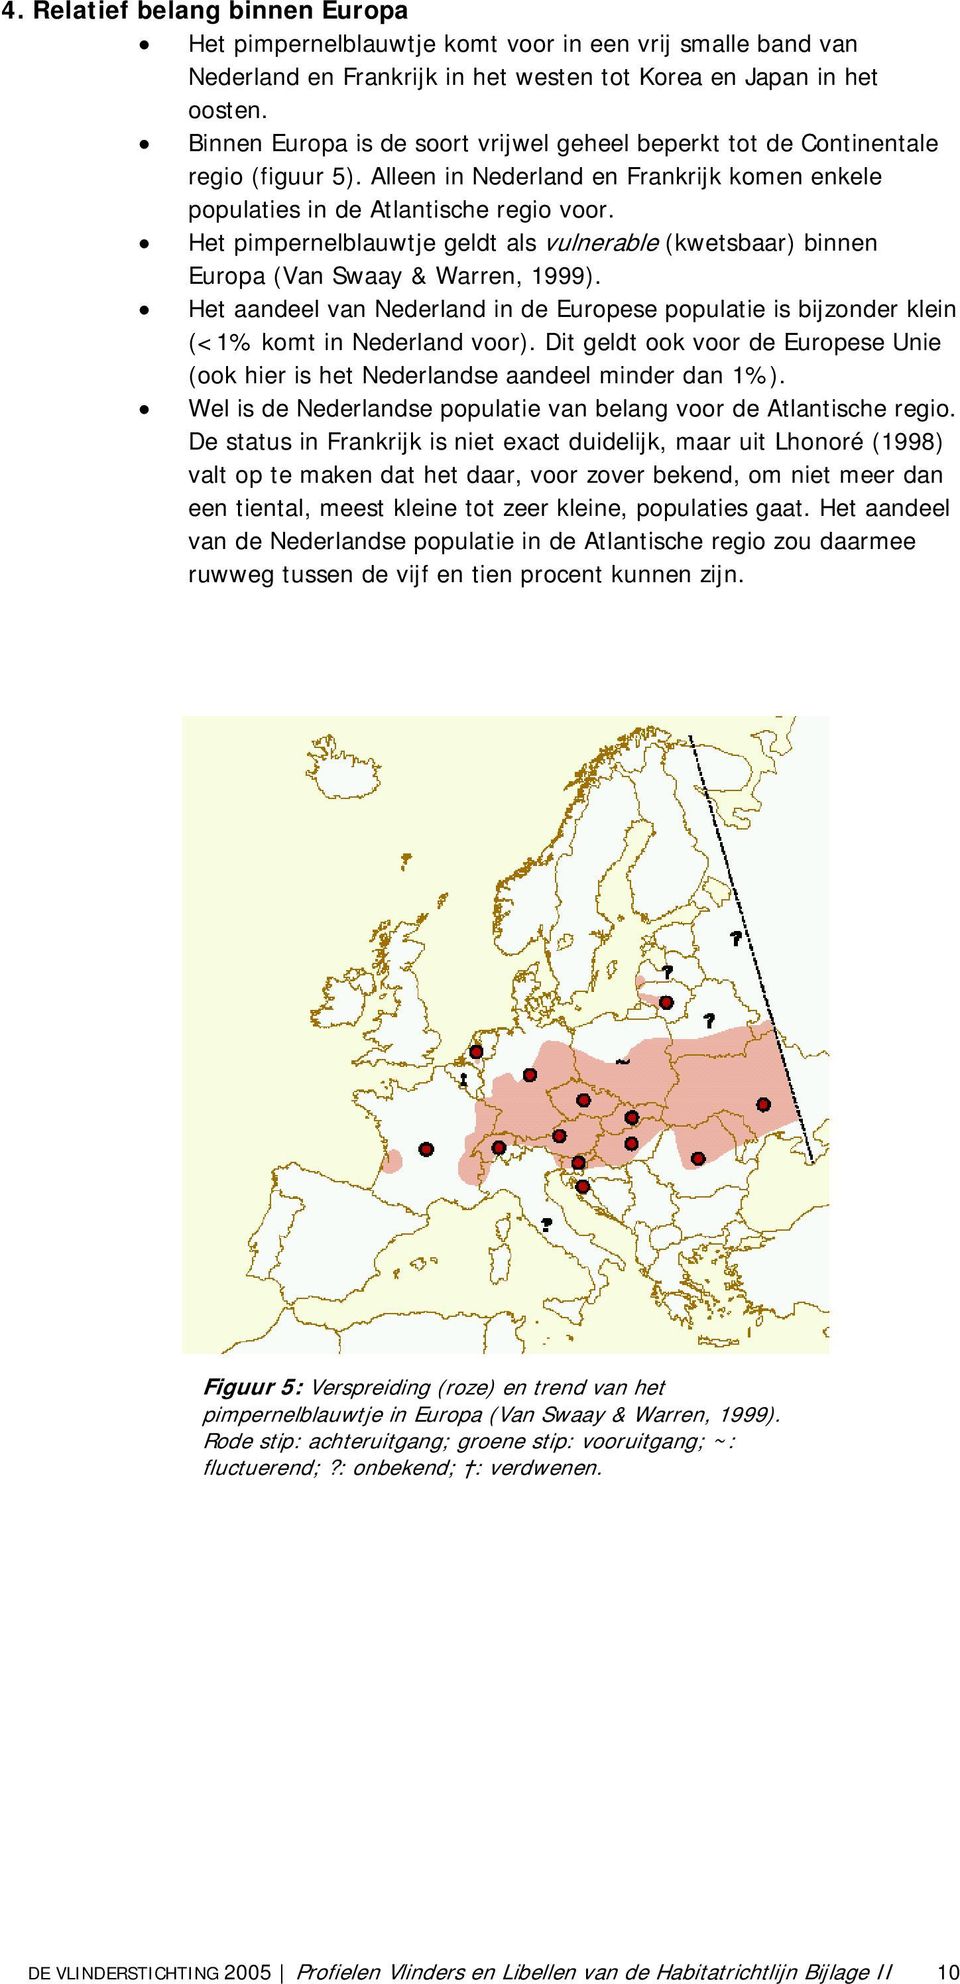 Het pimpernelblauwtje geldt als vulnerable (kwetsbaar) binnen Europa (Van Swaay & Warren, 1999). Het aandeel van Nederland in de Europese populatie is bijzonder klein (<1% komt in Nederland voor).